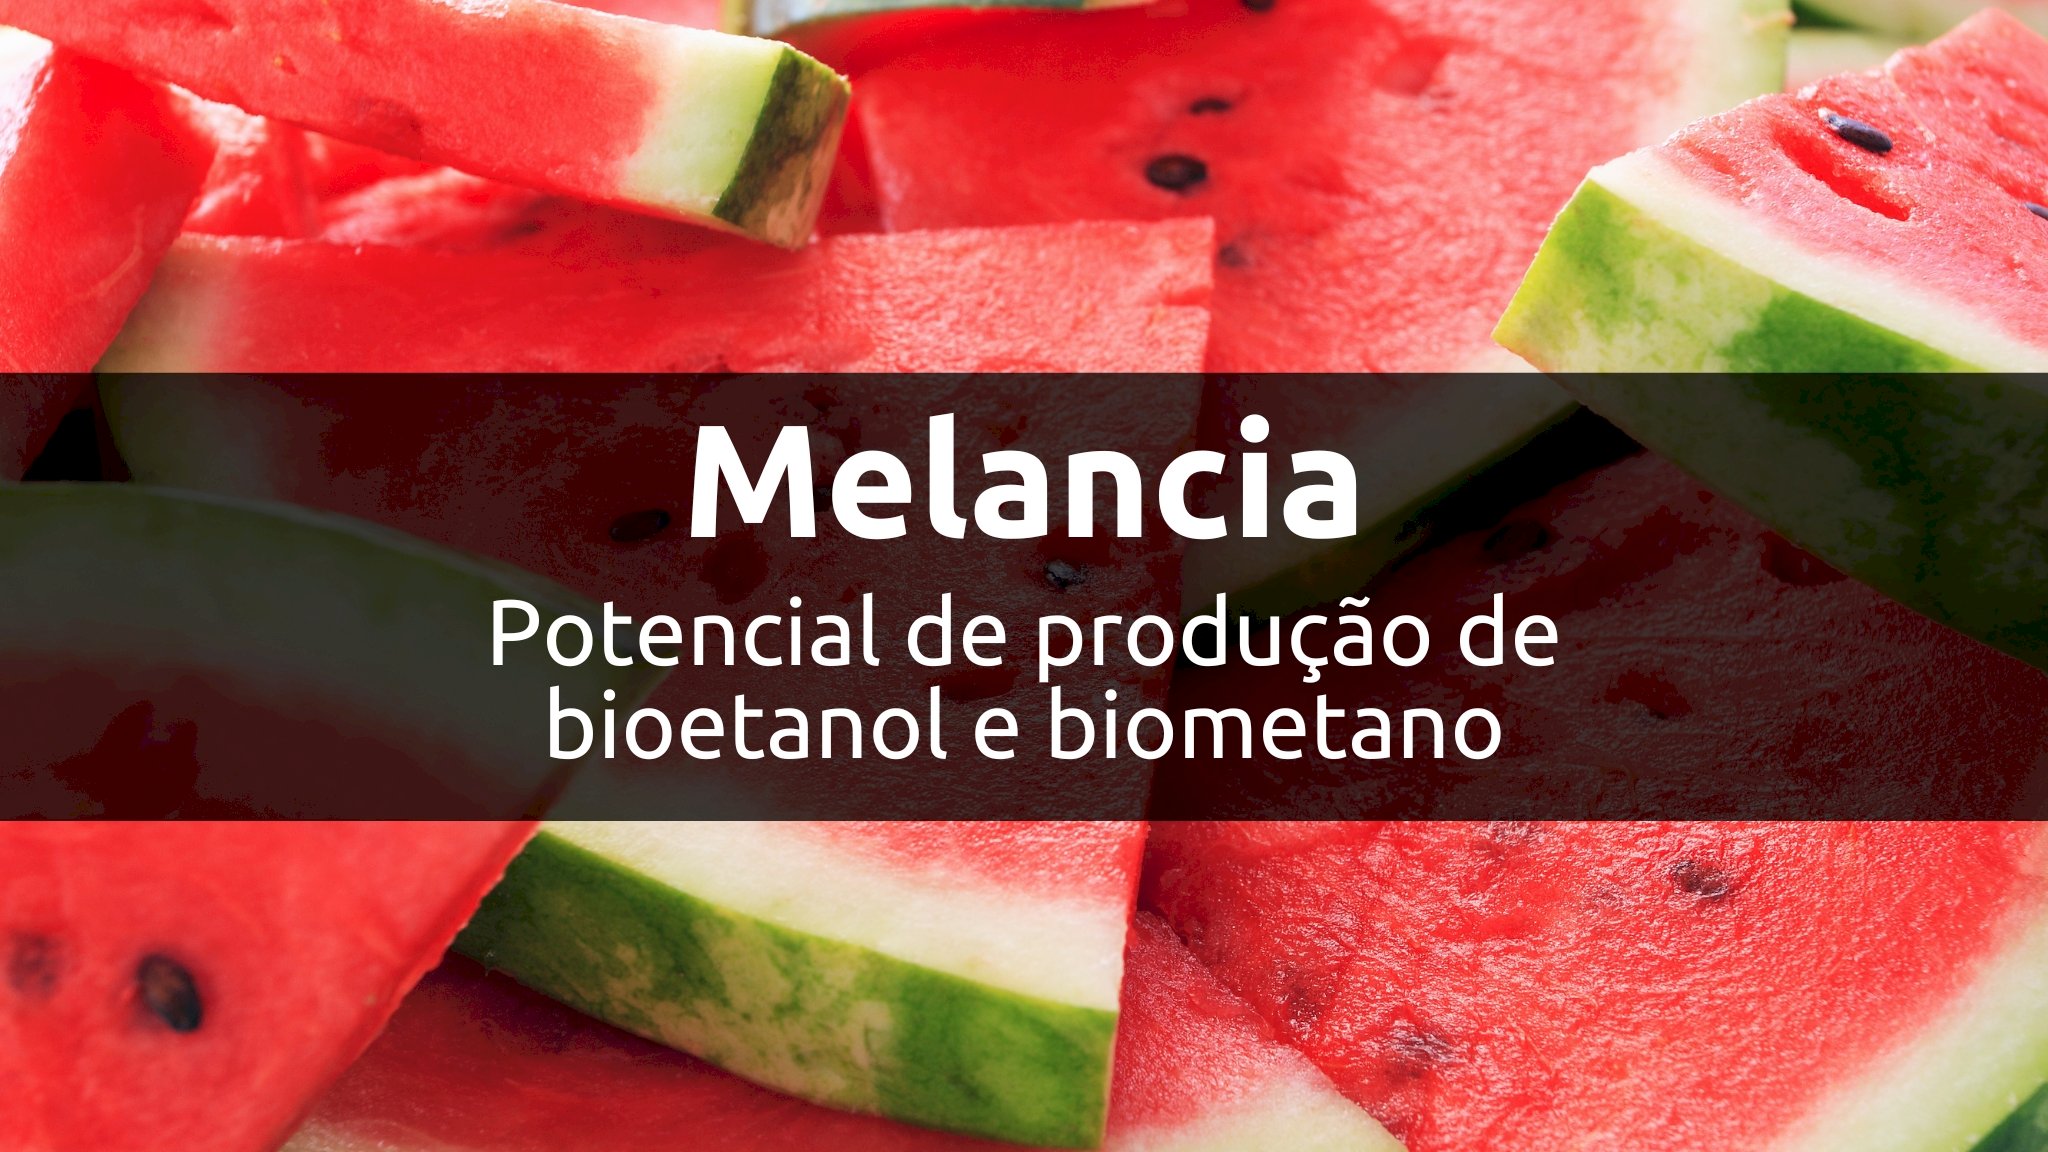 Potencial de produção de bioetanol e biometano a partir de resíduos de melancia